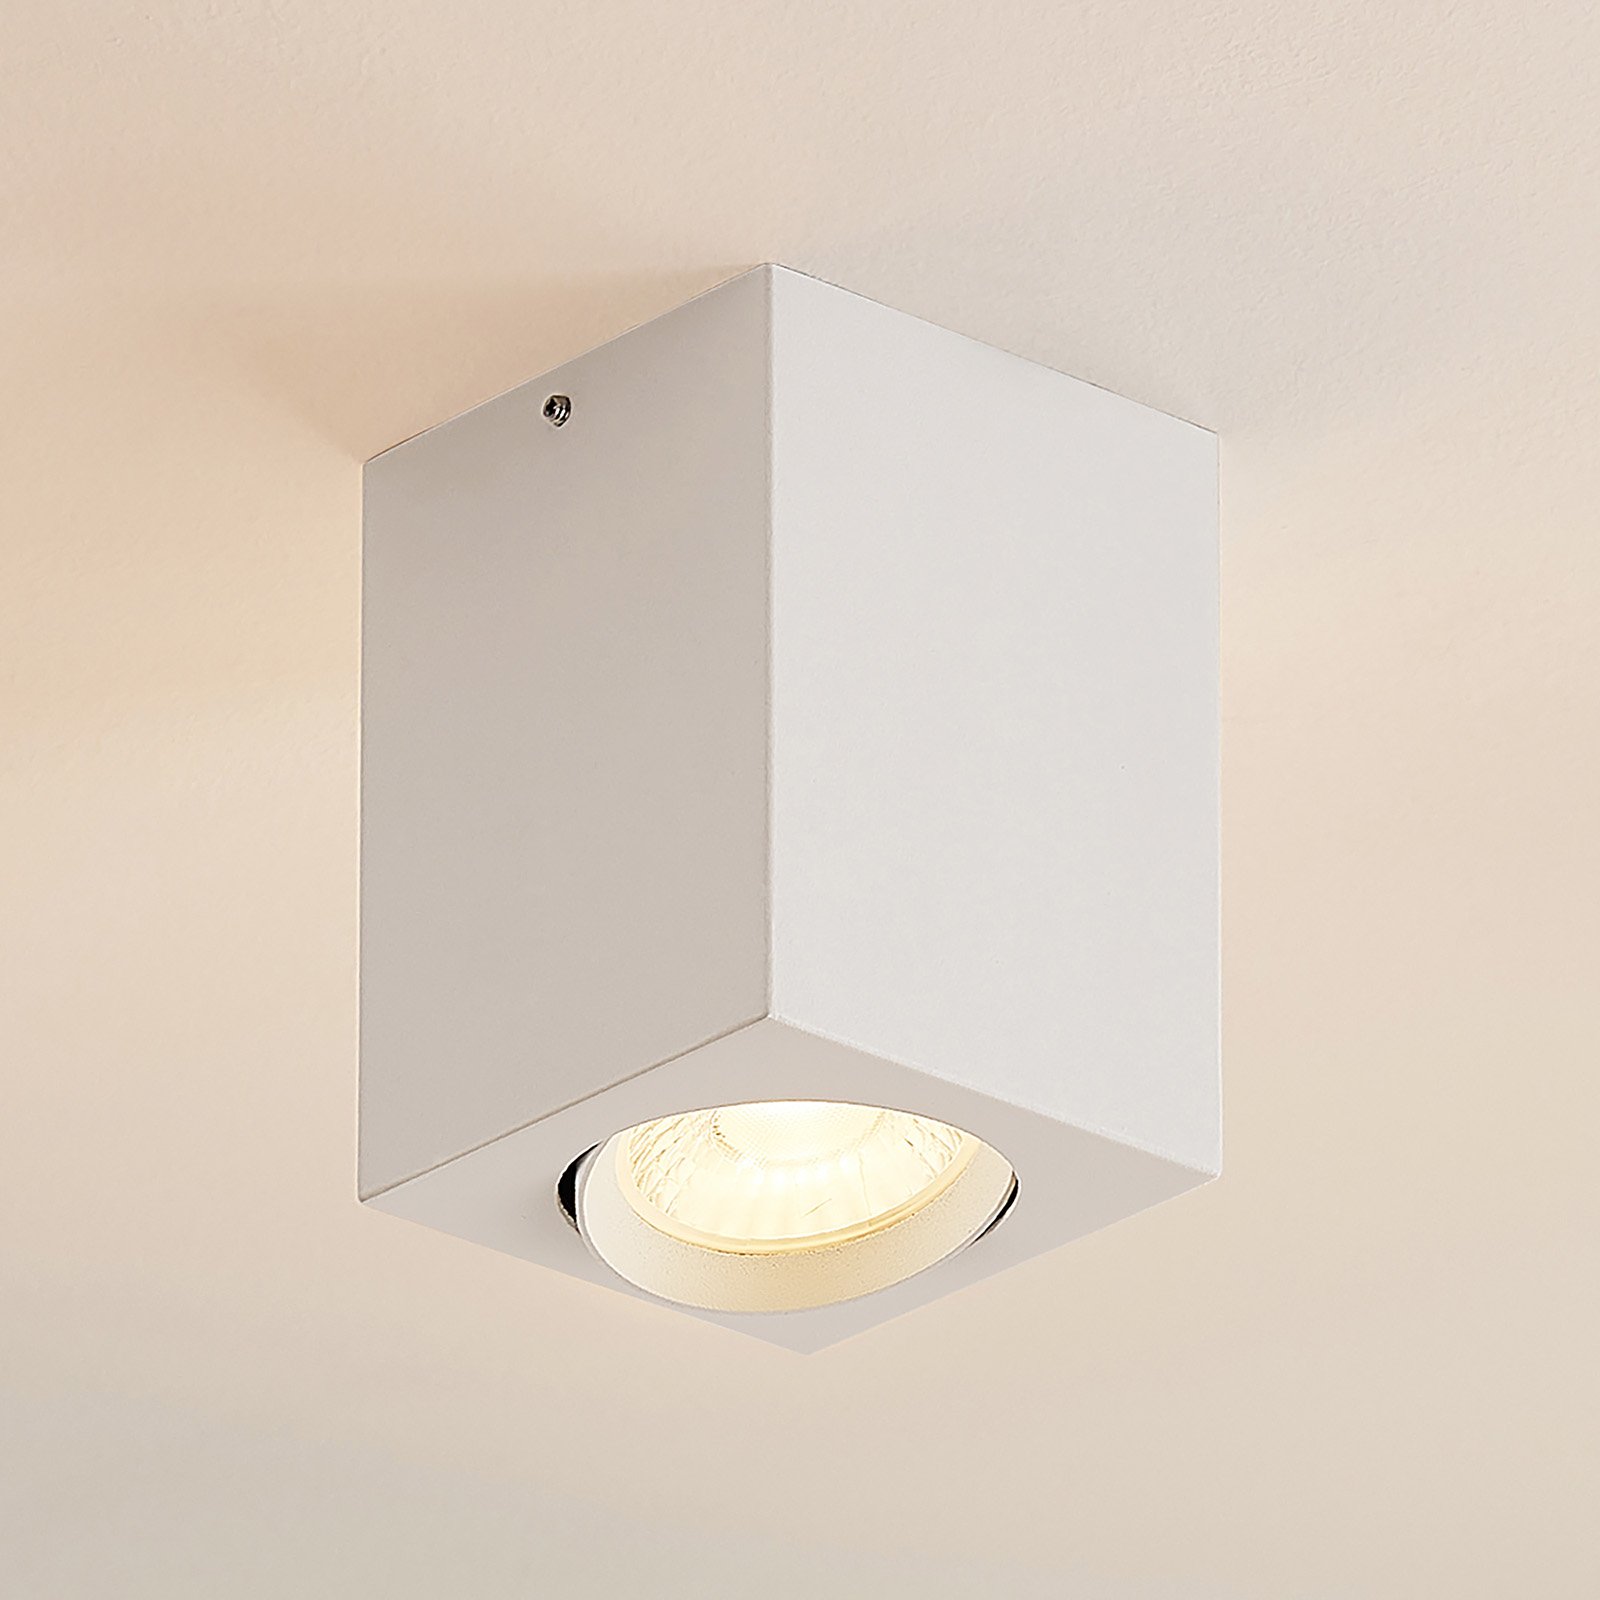 Arcchio Basir LED-kohdevalo, valkoinen, 4,8 W